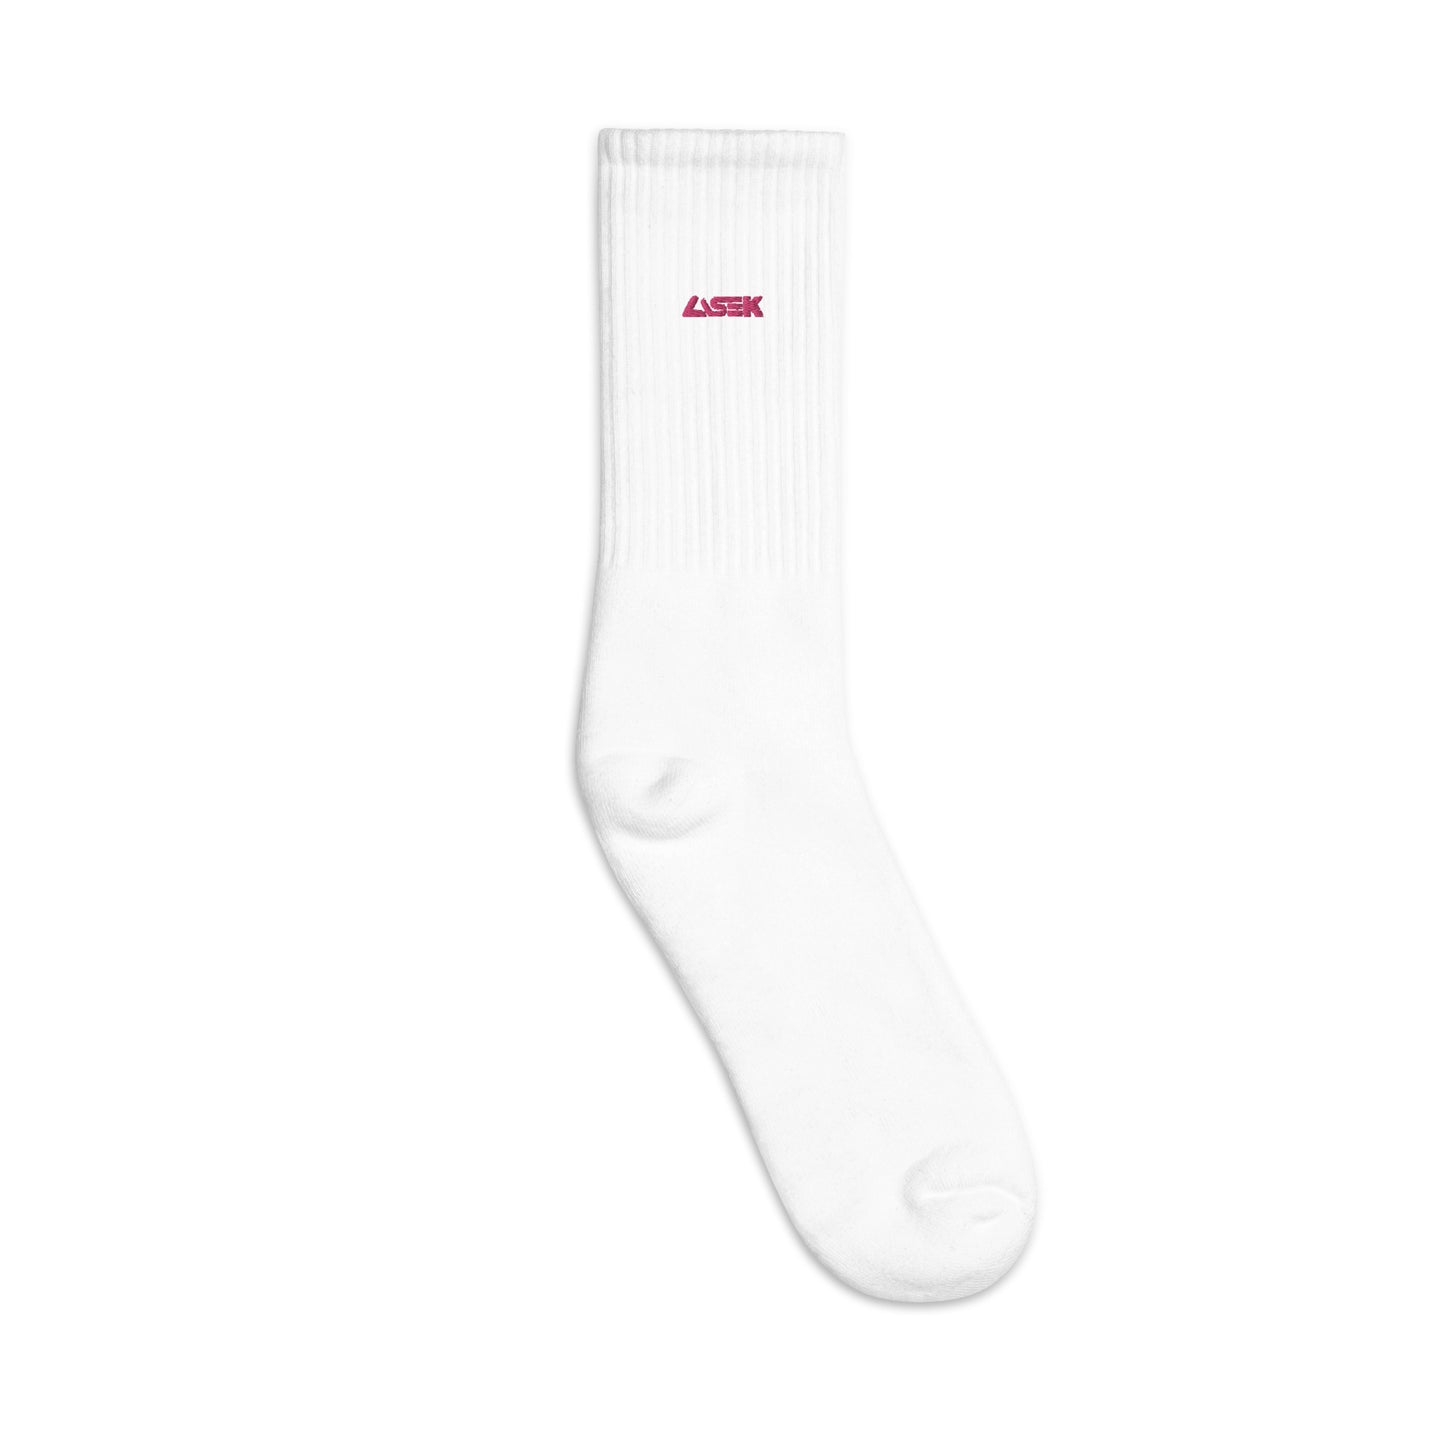 LASEK Logo Socks